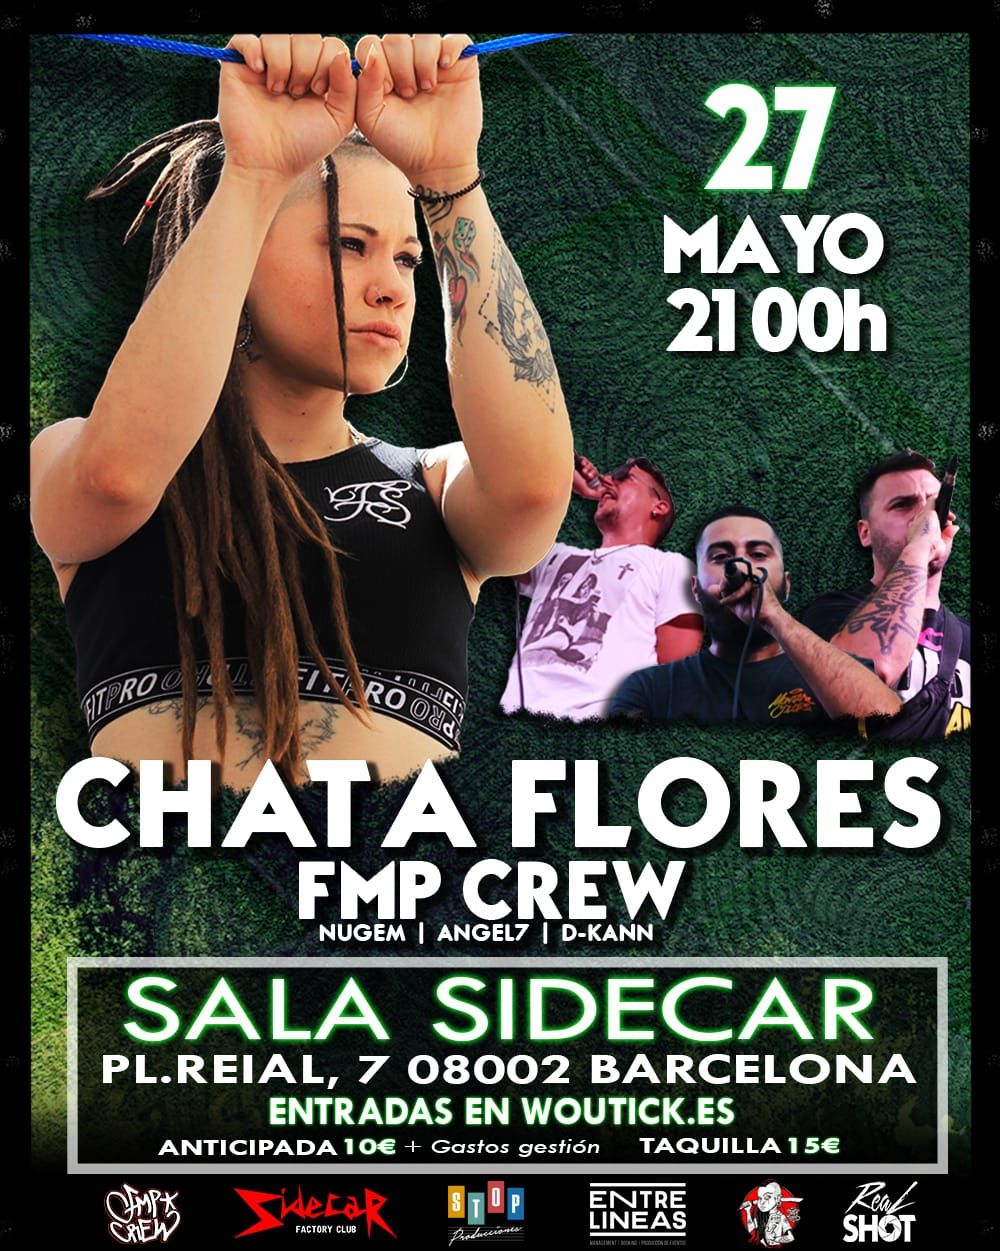 Concert de Chata Flores, Fmp crew 